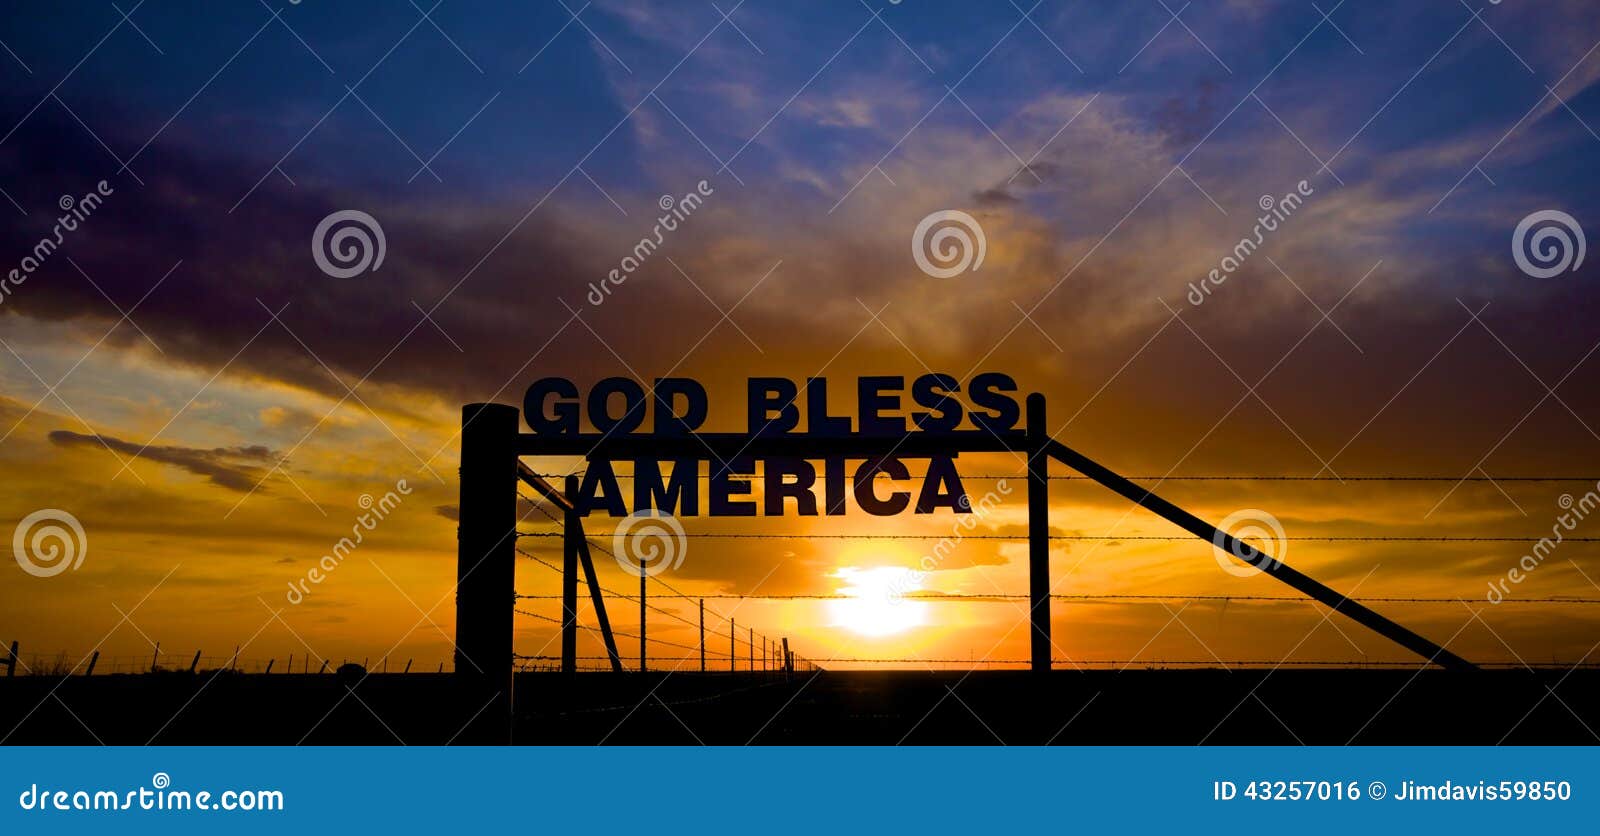 god bless america